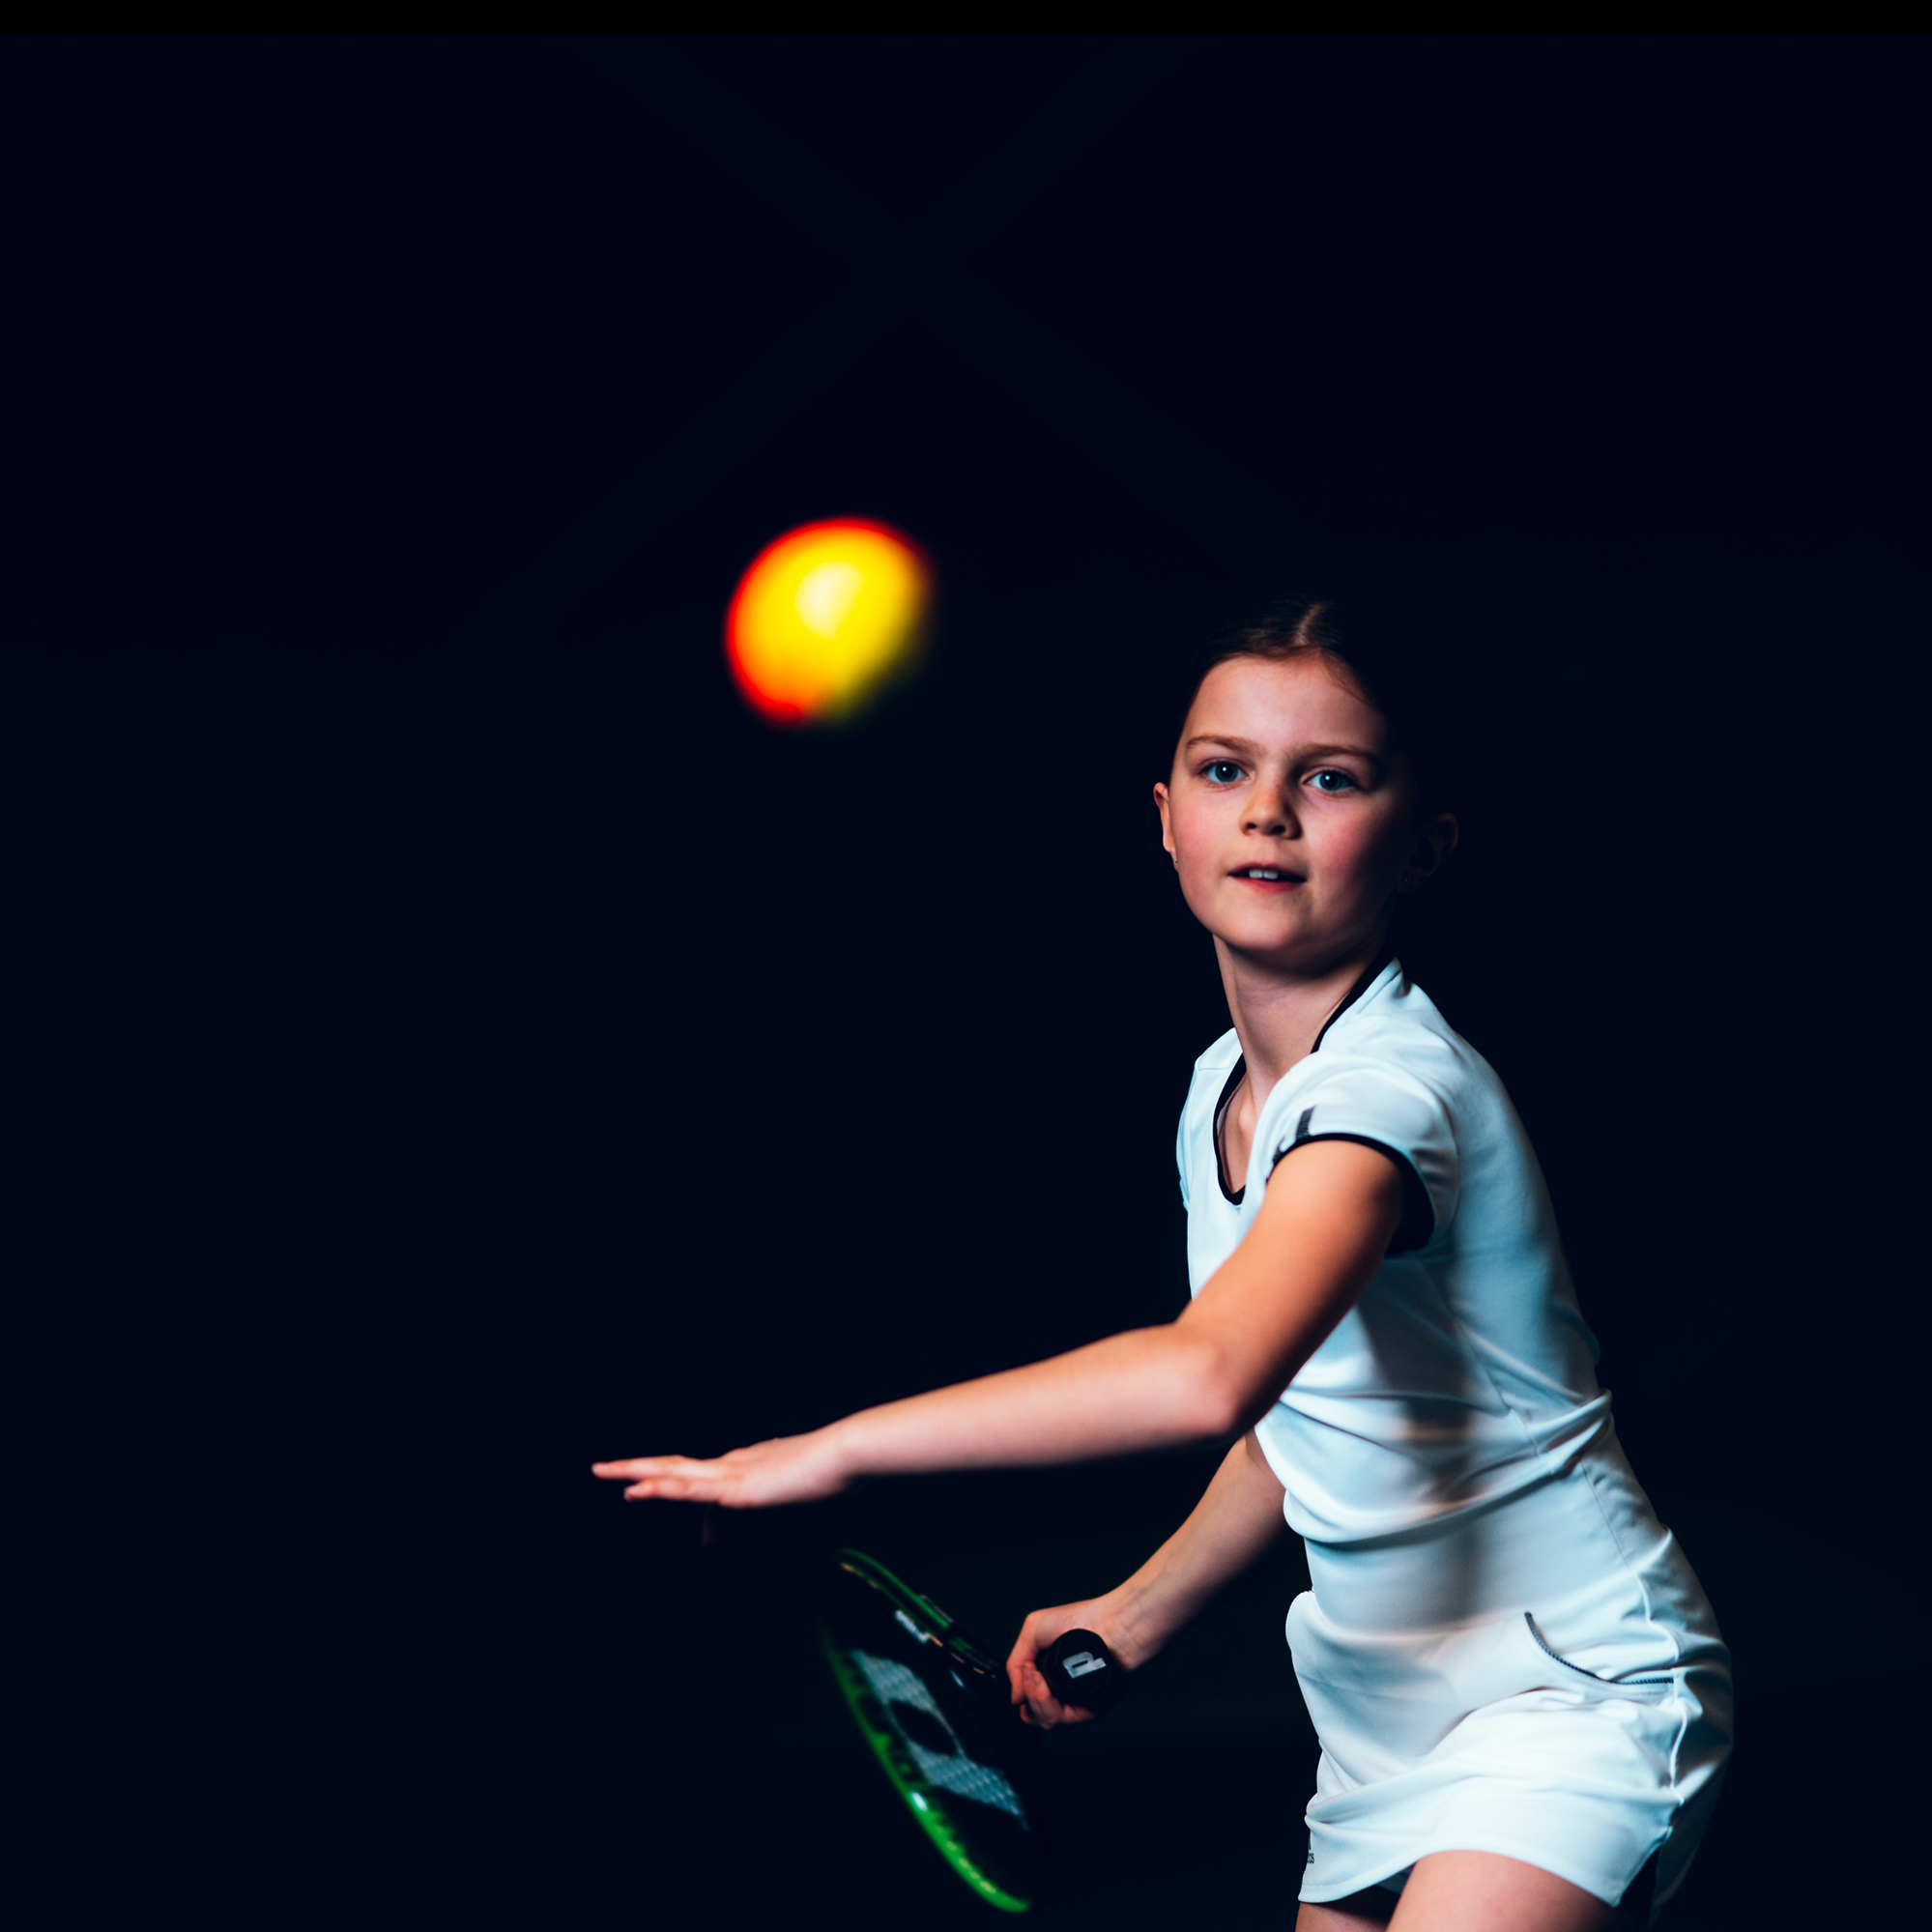 Mitt i föreningslivet - Flicka som spelar tennis